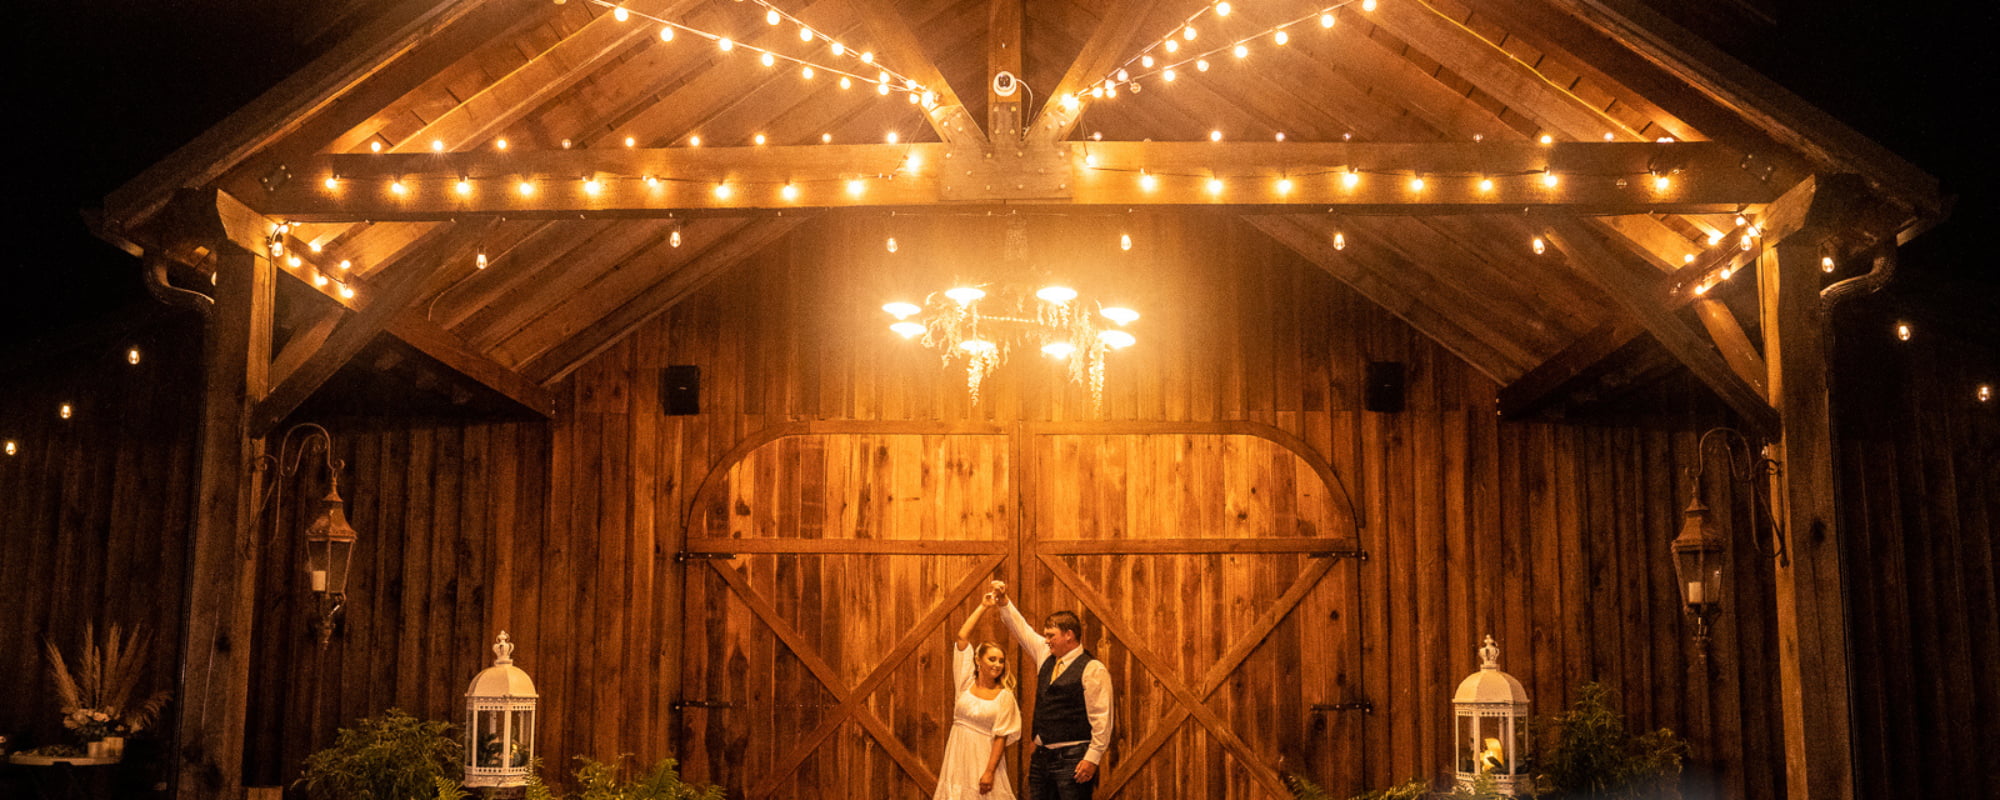 The Hidden Homestead outdoor wedding venues in Kentucky